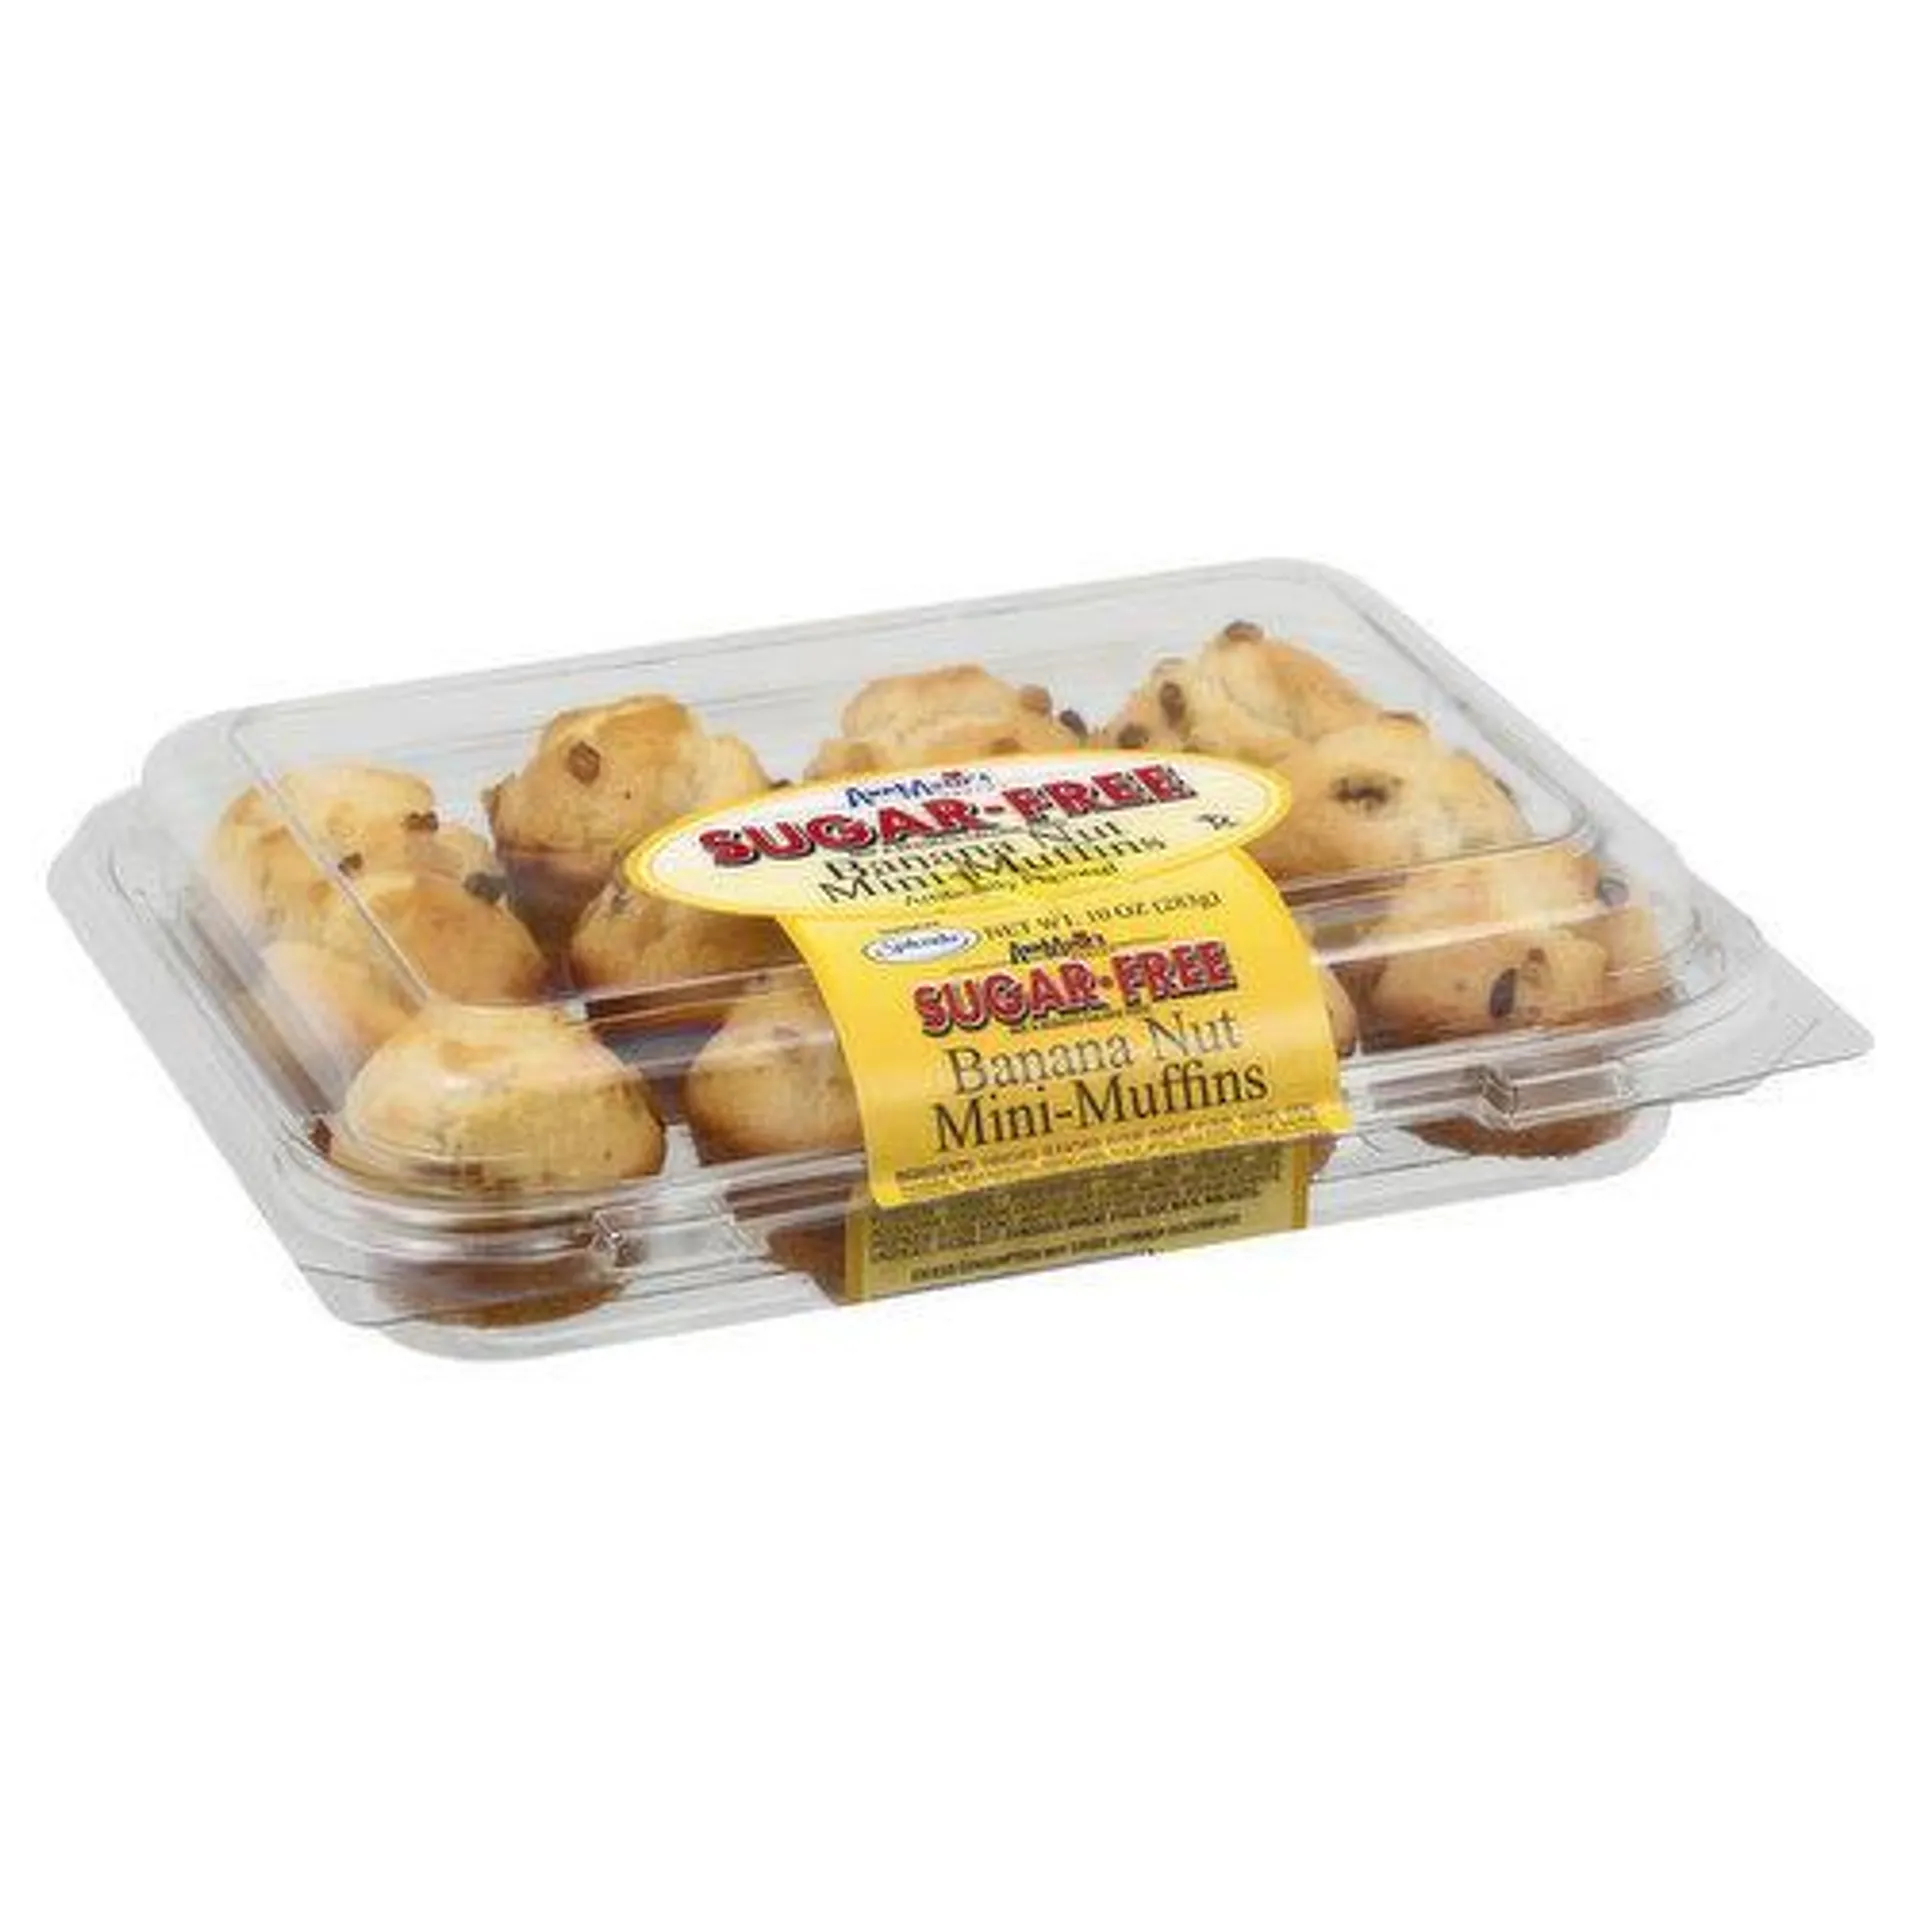 Ann Marie's Mini-Muffins, Sugar Free, Banana Nut - 10 Ounce